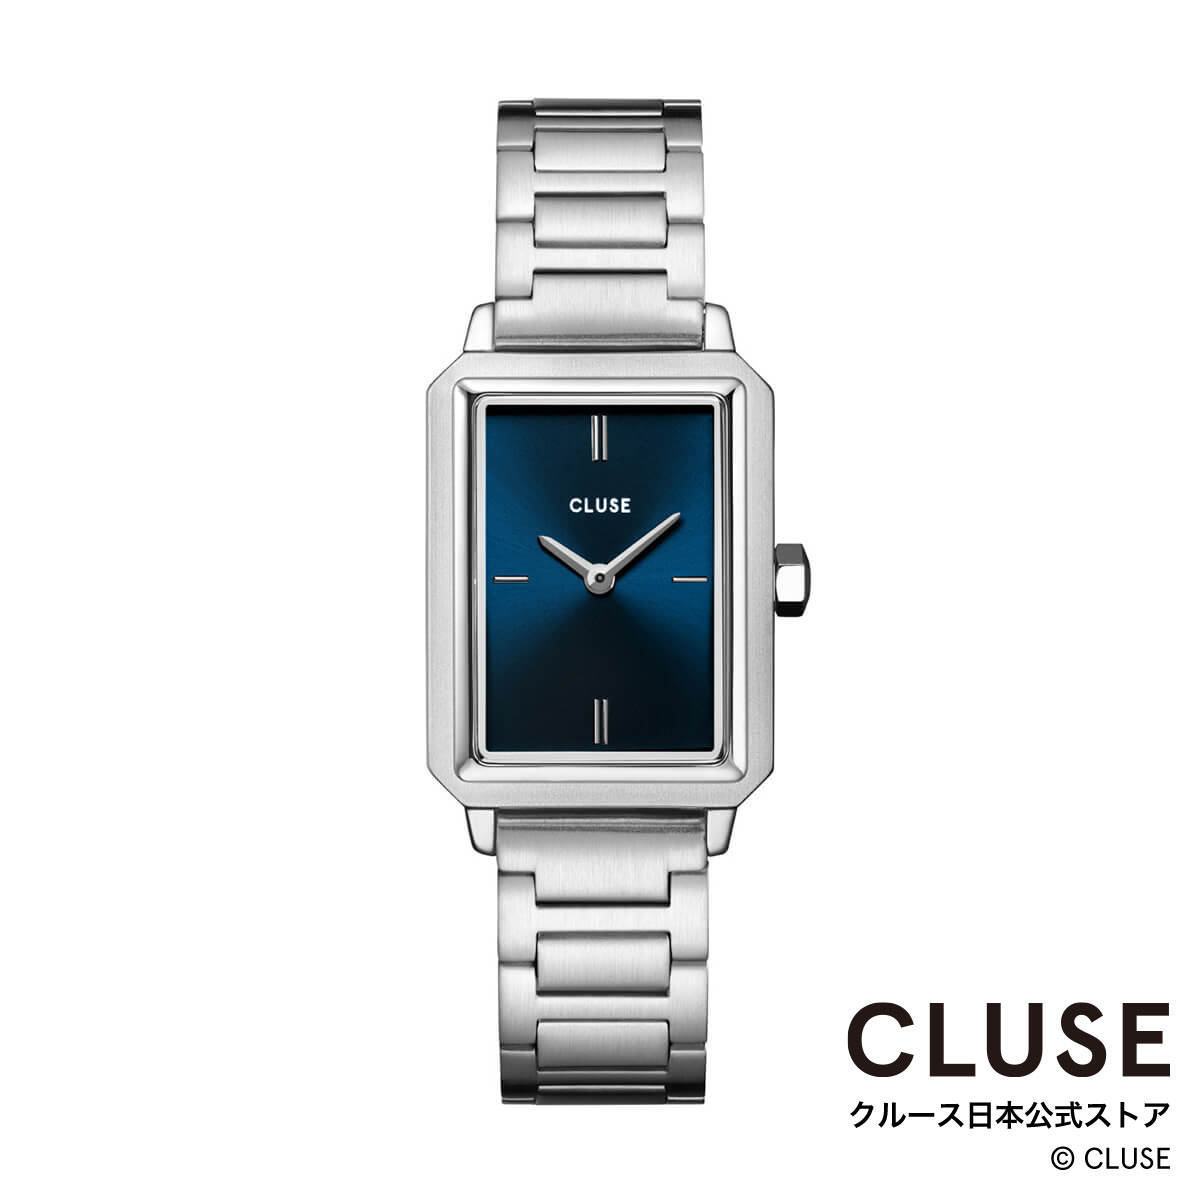 クルース CLUSE 日本公式ストア フリューレット スティール ダークブルー シルバー レディース 女性 腕時計 時計 防水 クォーツ